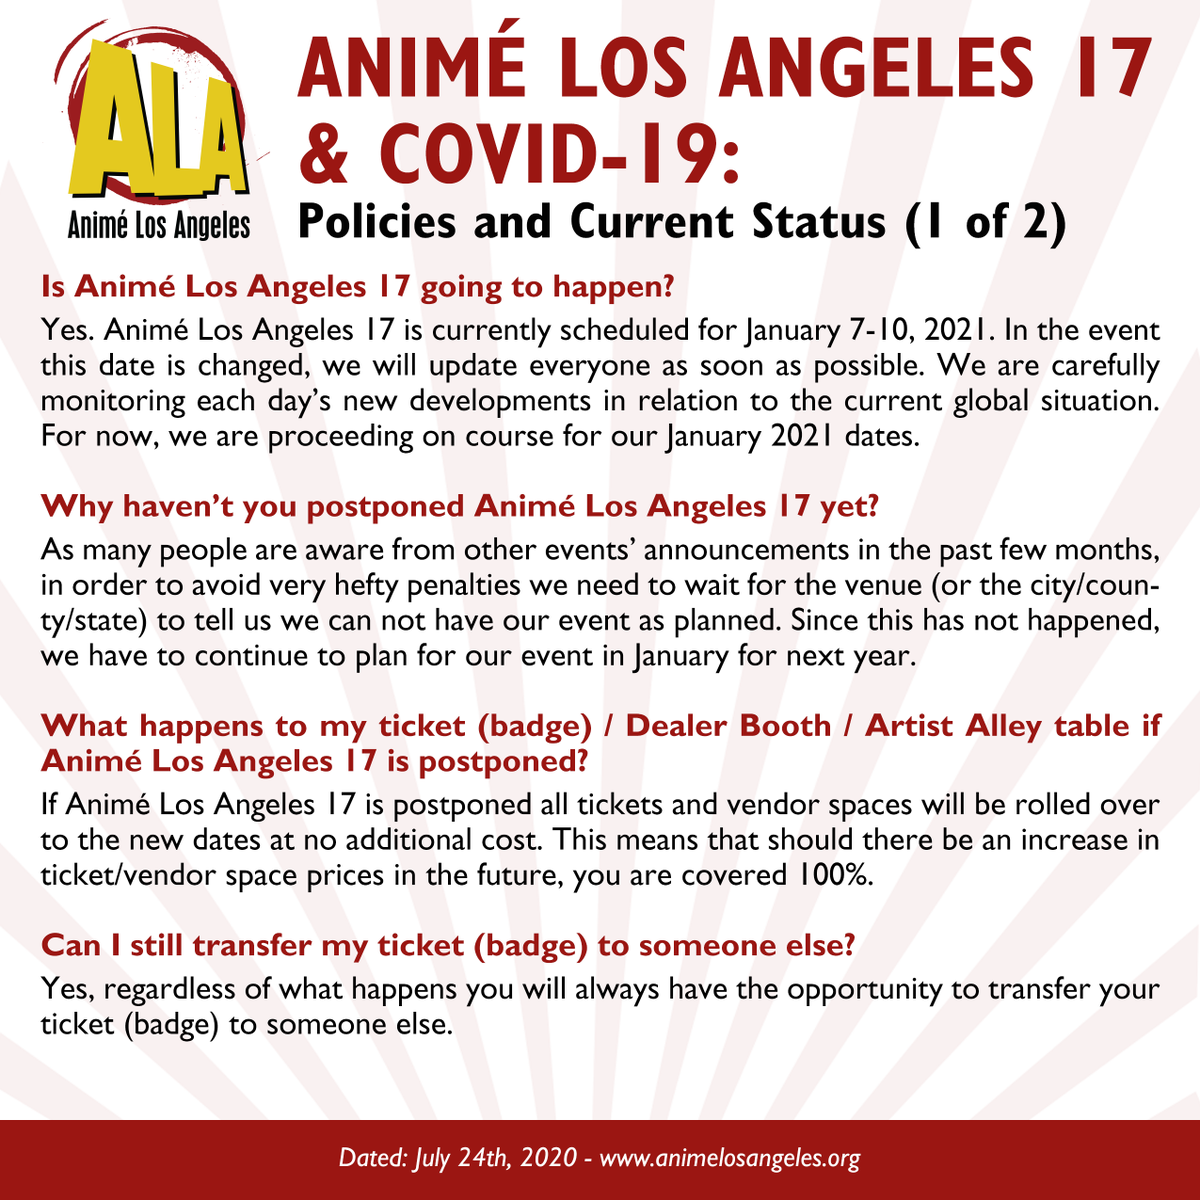 Anime Los Angeles Staff